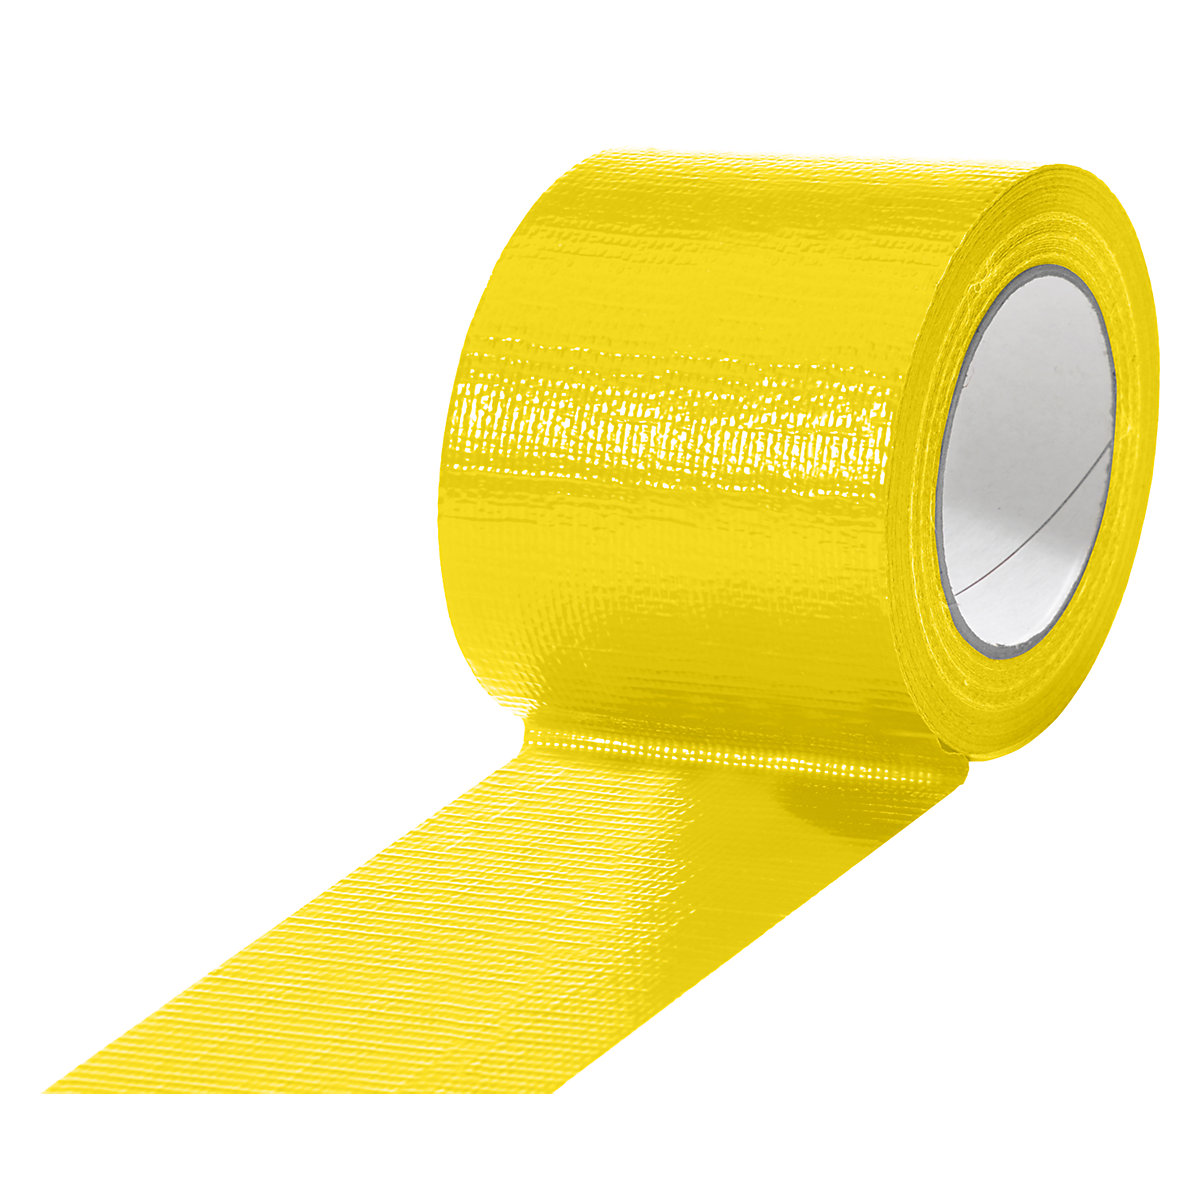 Fita de tecido, em diversas cores, embalagem com 12 rolos, amarelo, largura da fita 75 mm-15